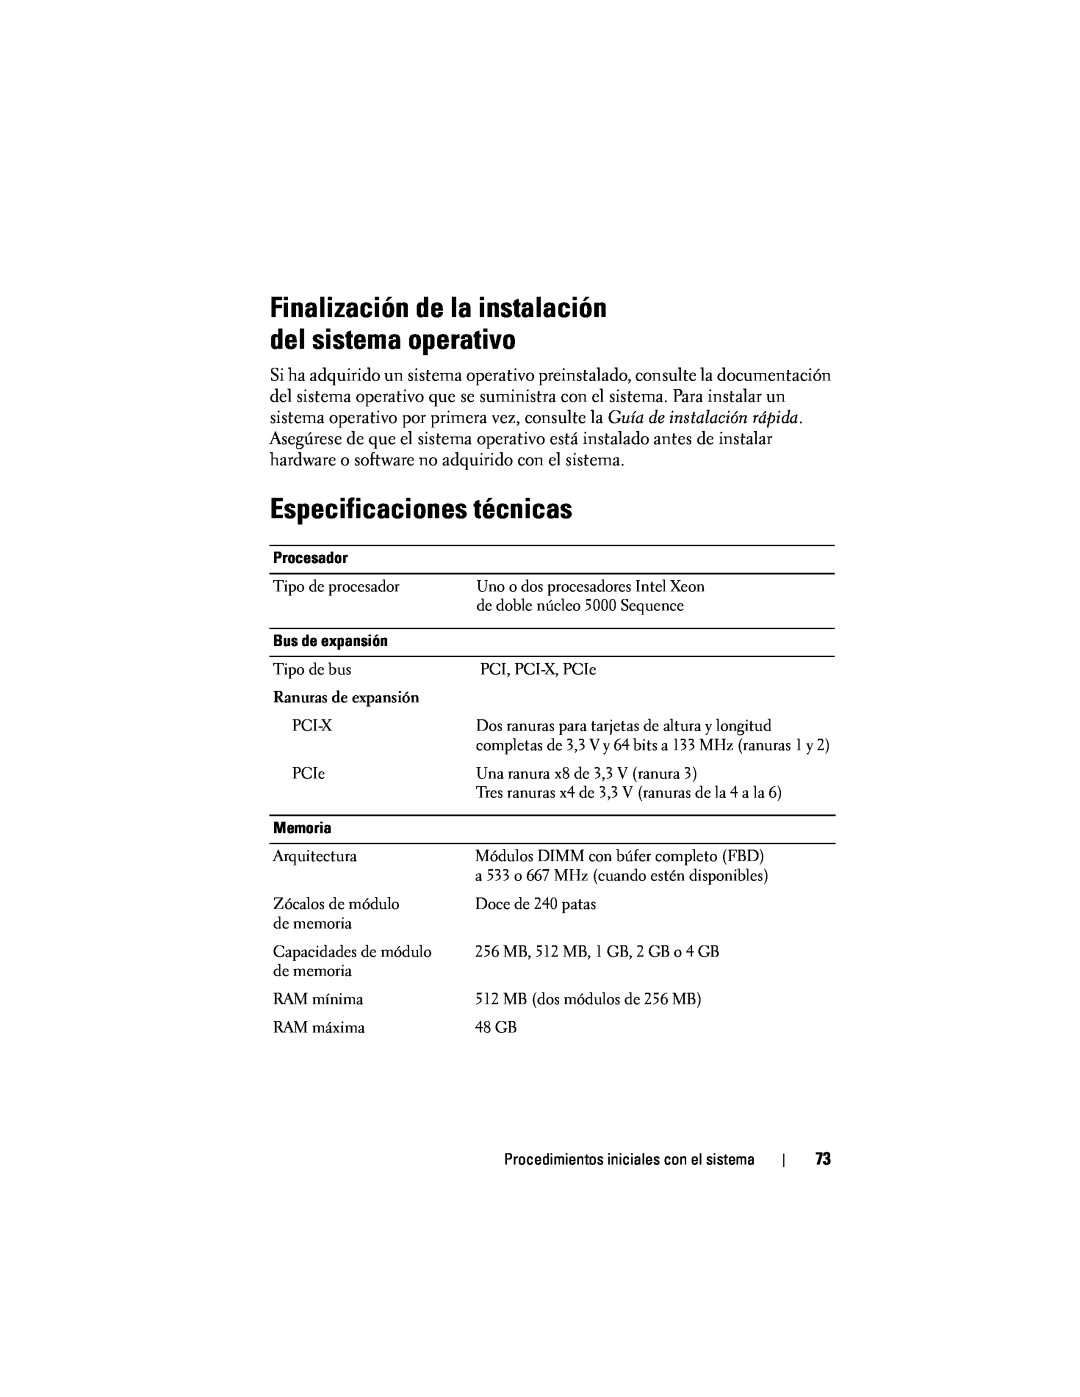 Dell CX193 manual Especificaciones técnicas, Finalización de la instalación del sistema operativo 